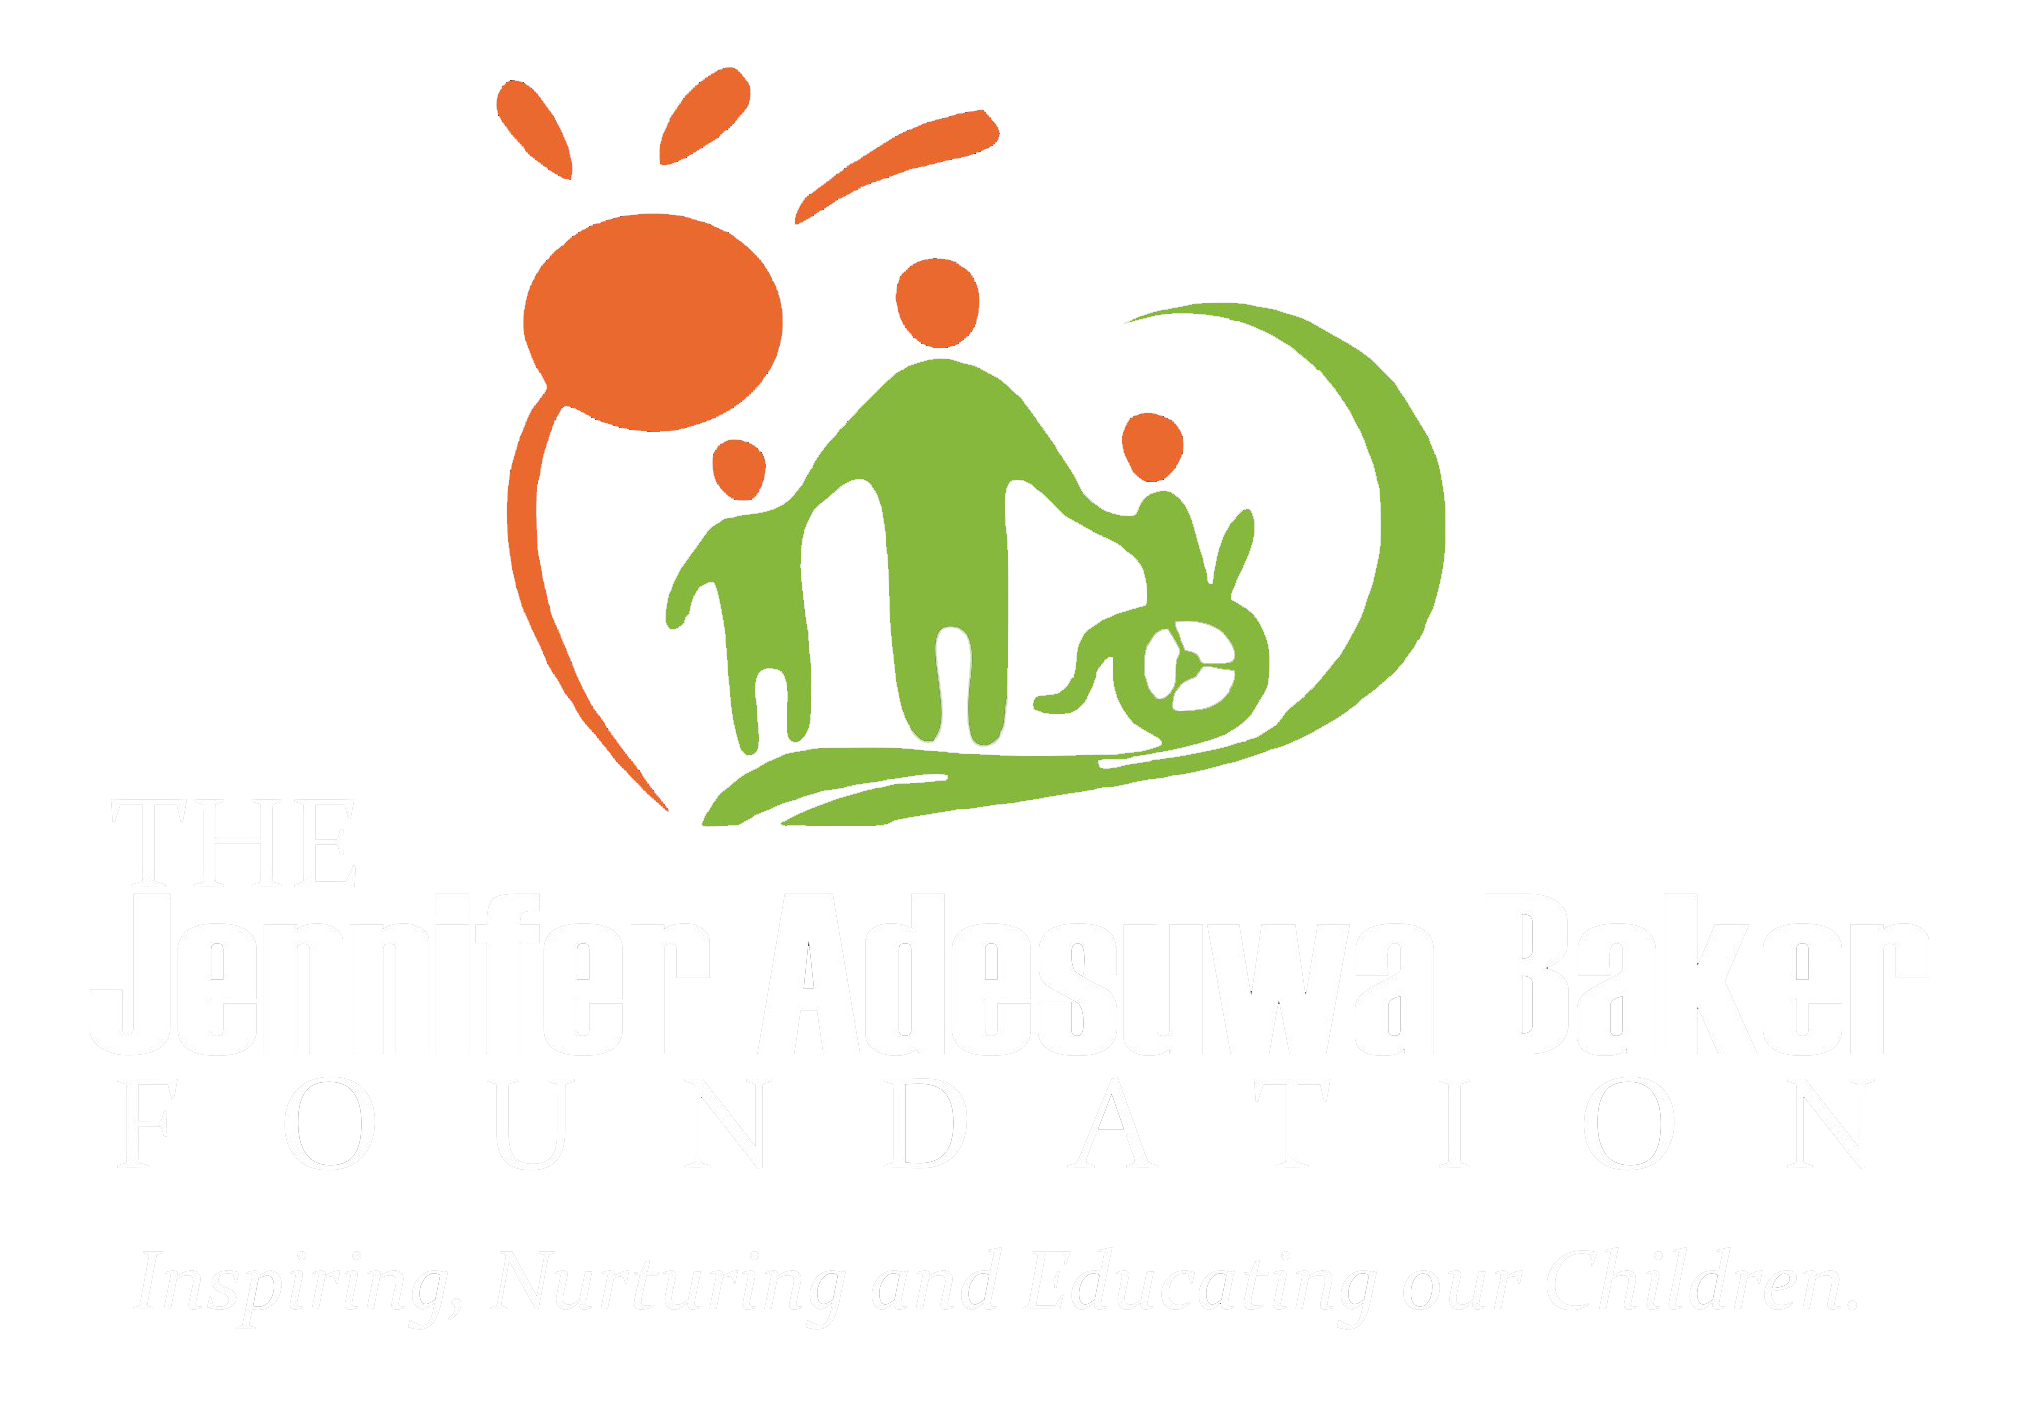 Jennifer Adesuwa Baker Foundation